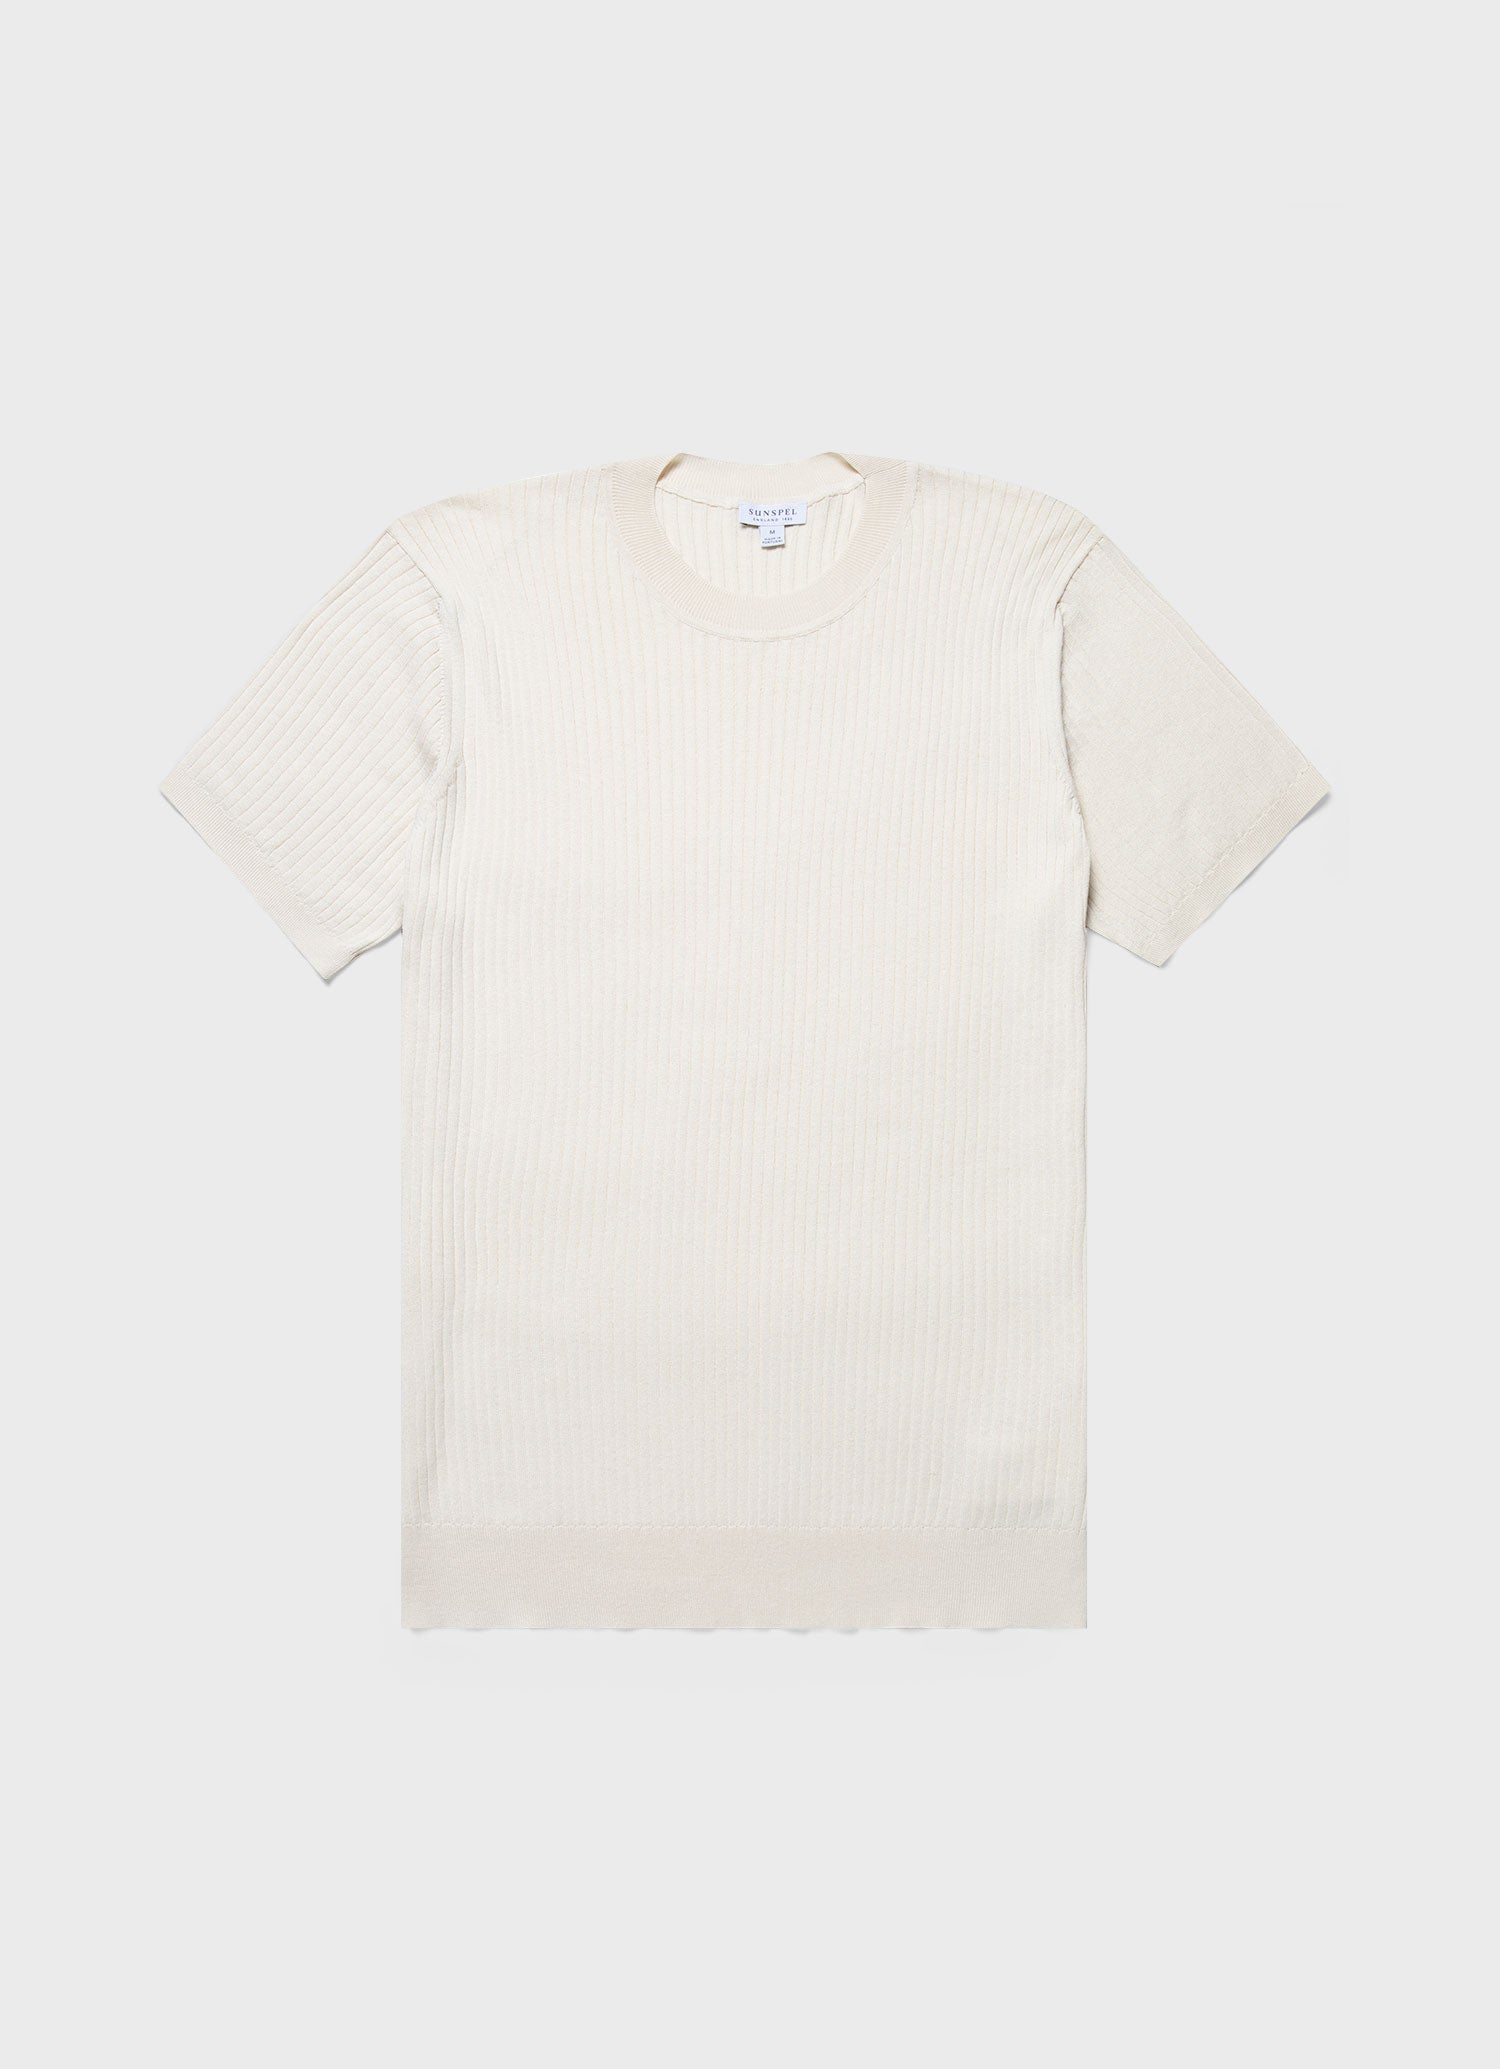 Men's Fine Rib Silk Cotton T-shirt in Ecru